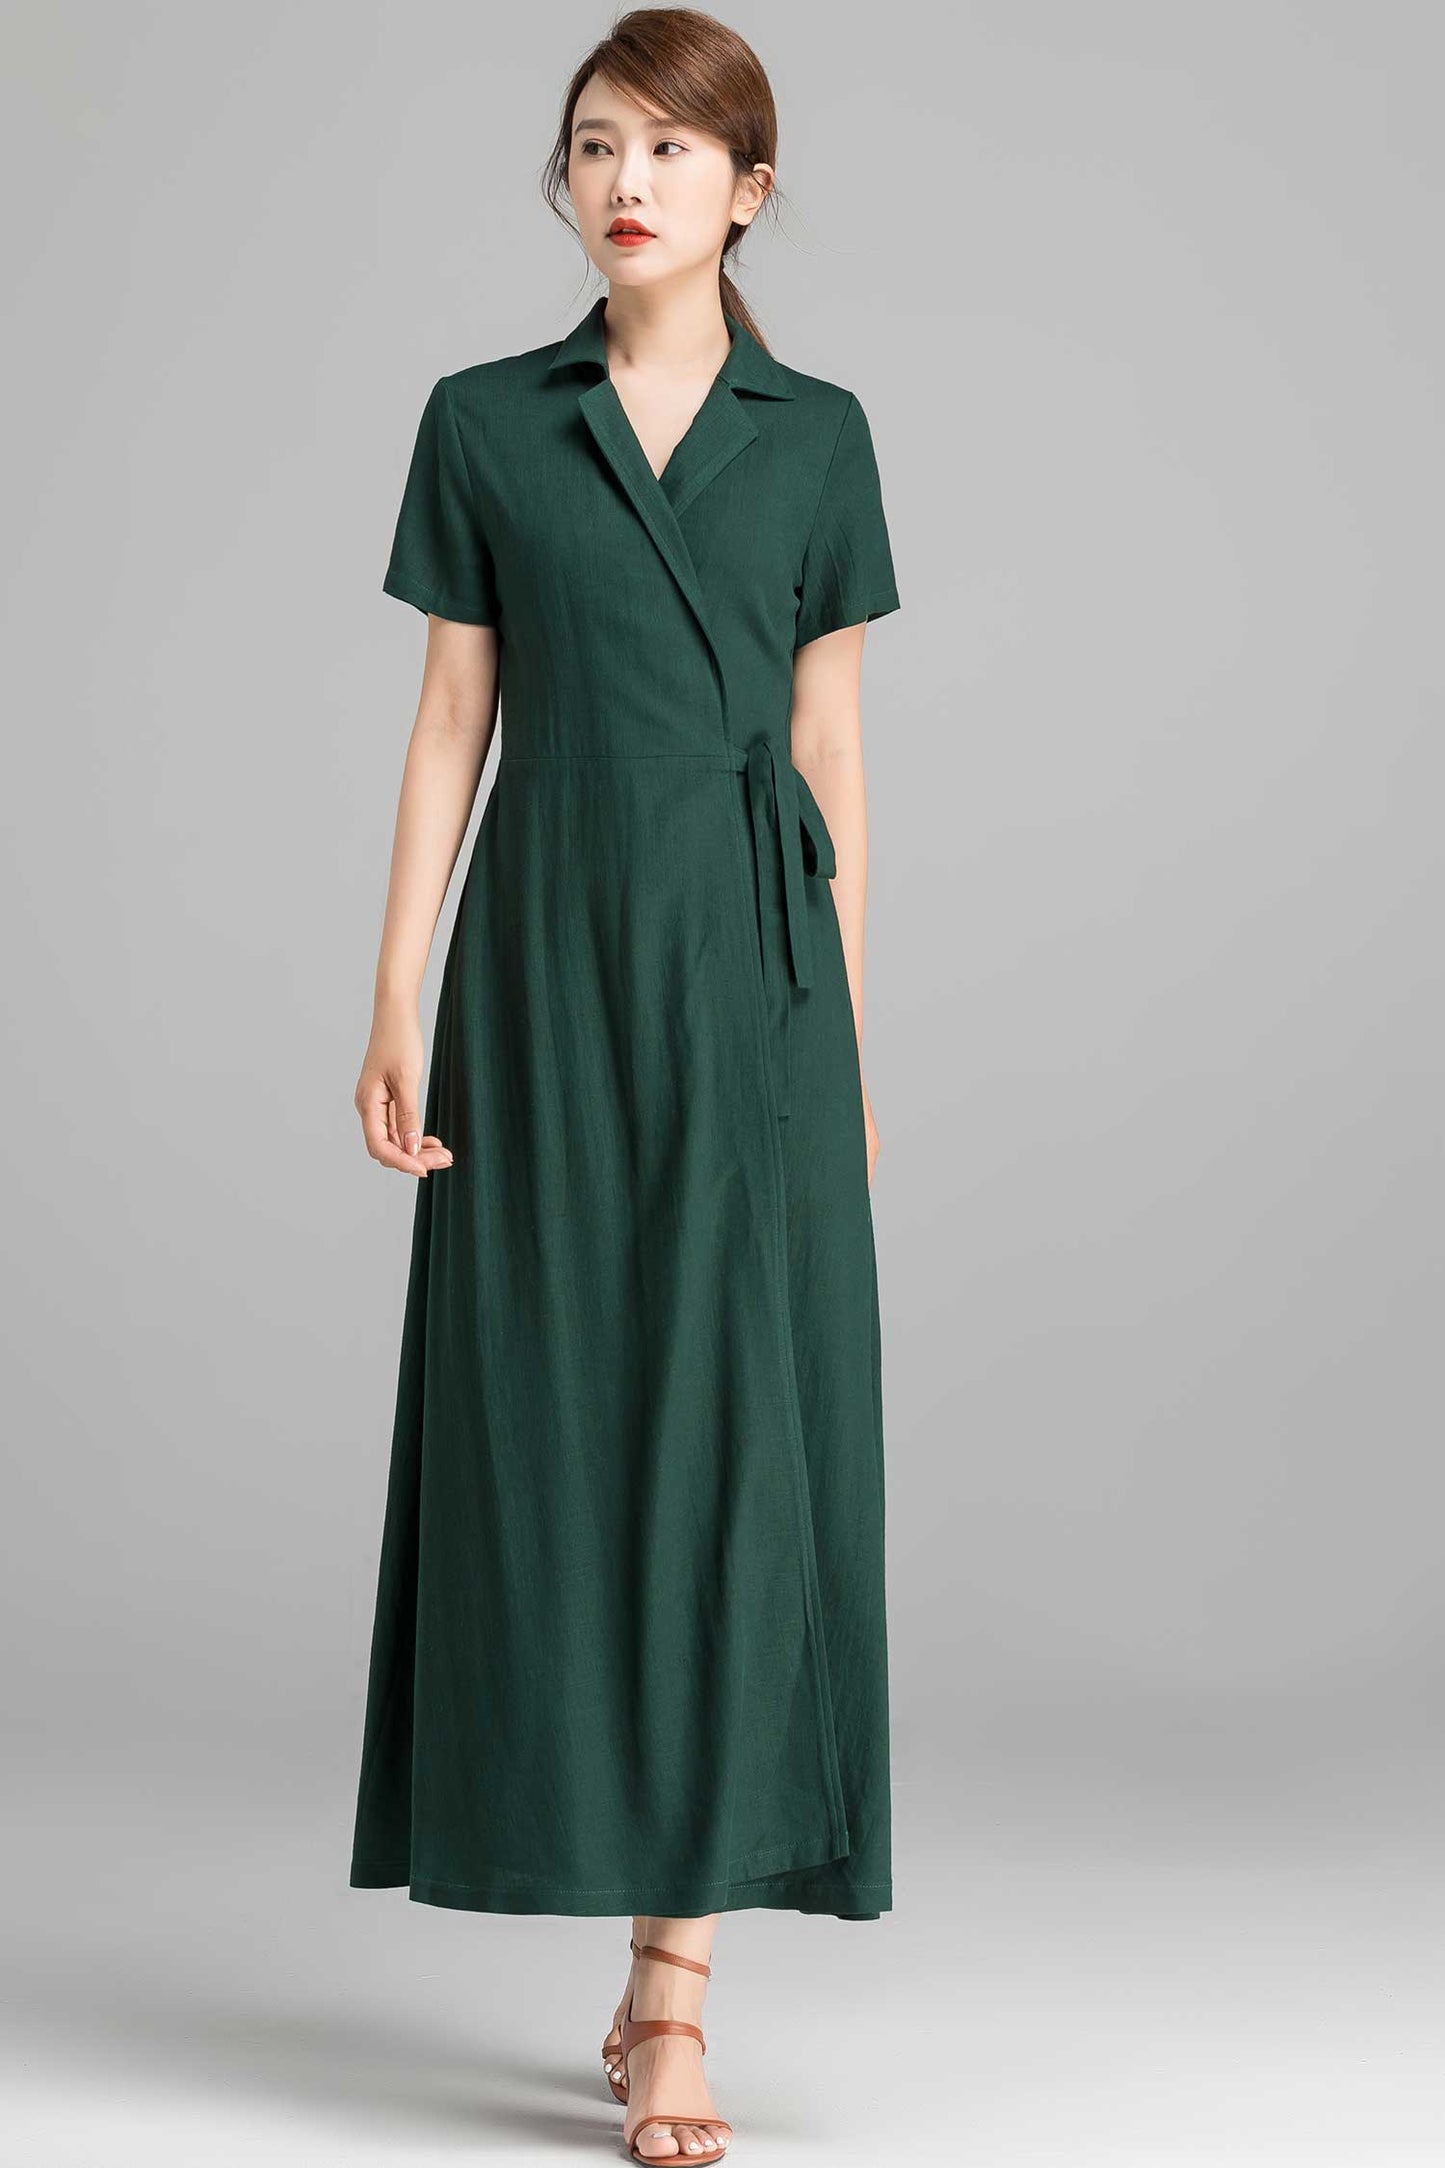 Summer Green  Wrap Maxi dress 236301